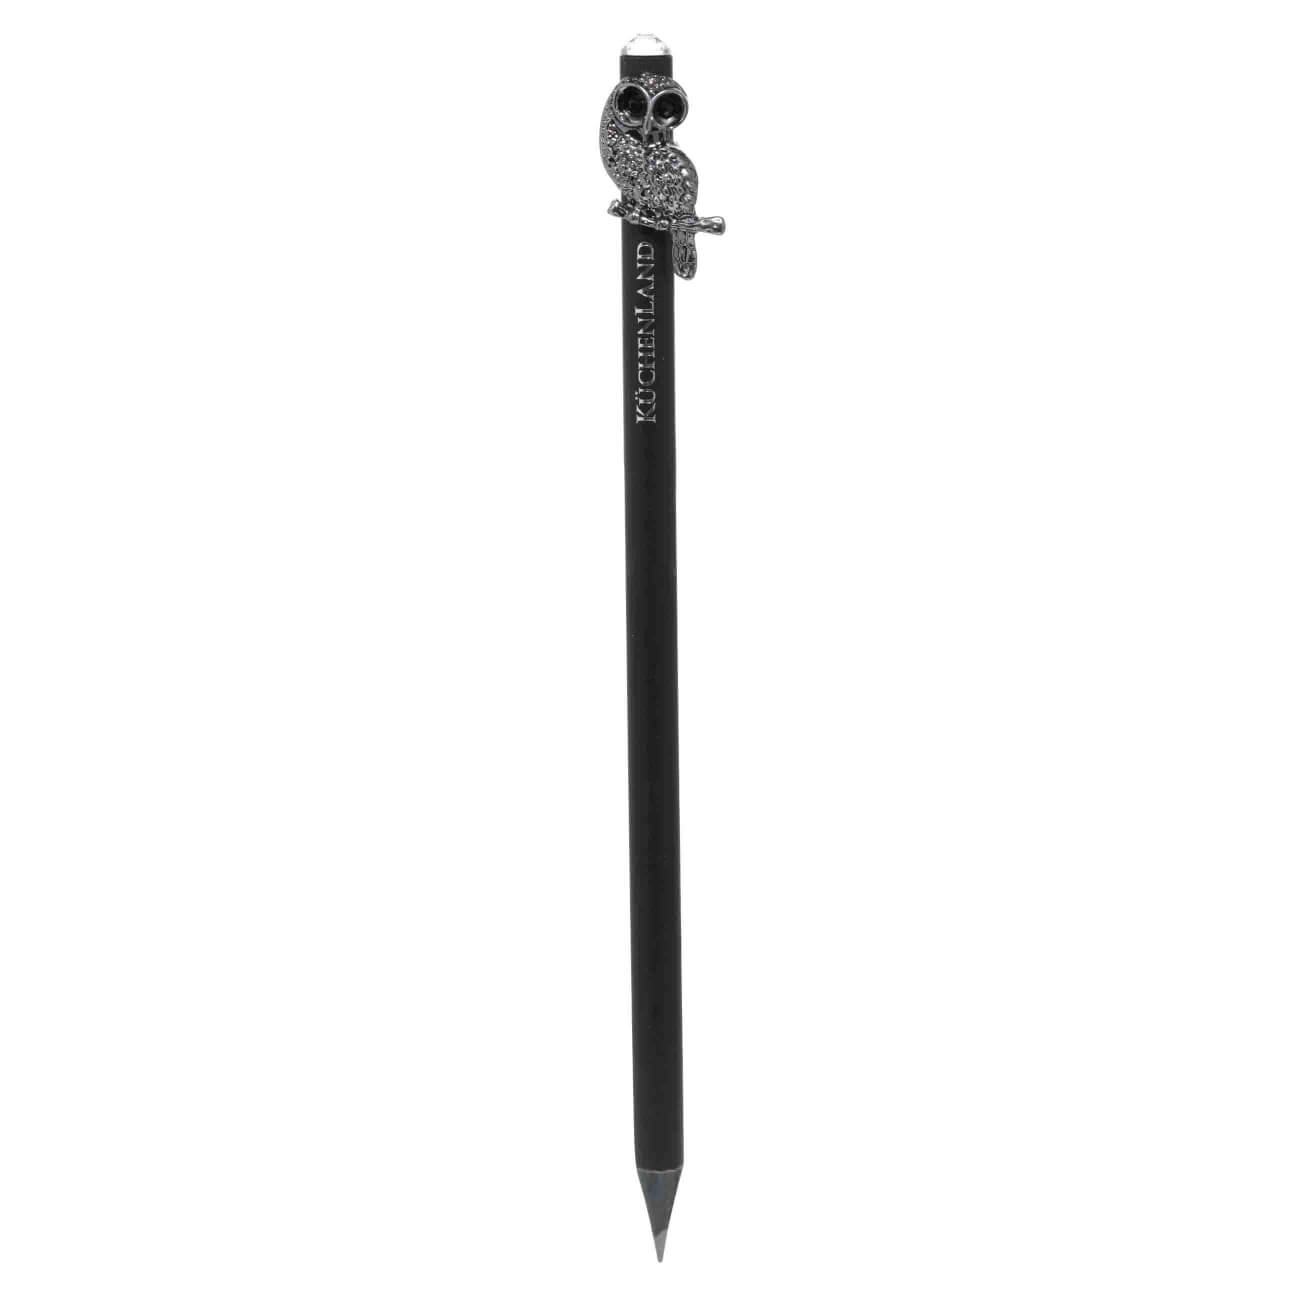 Карандаш, 18 см, чернографитный, с фигуркой, черный, Сова, Draw figure карандаш чернографитный stabilo easygraph для левшей hв